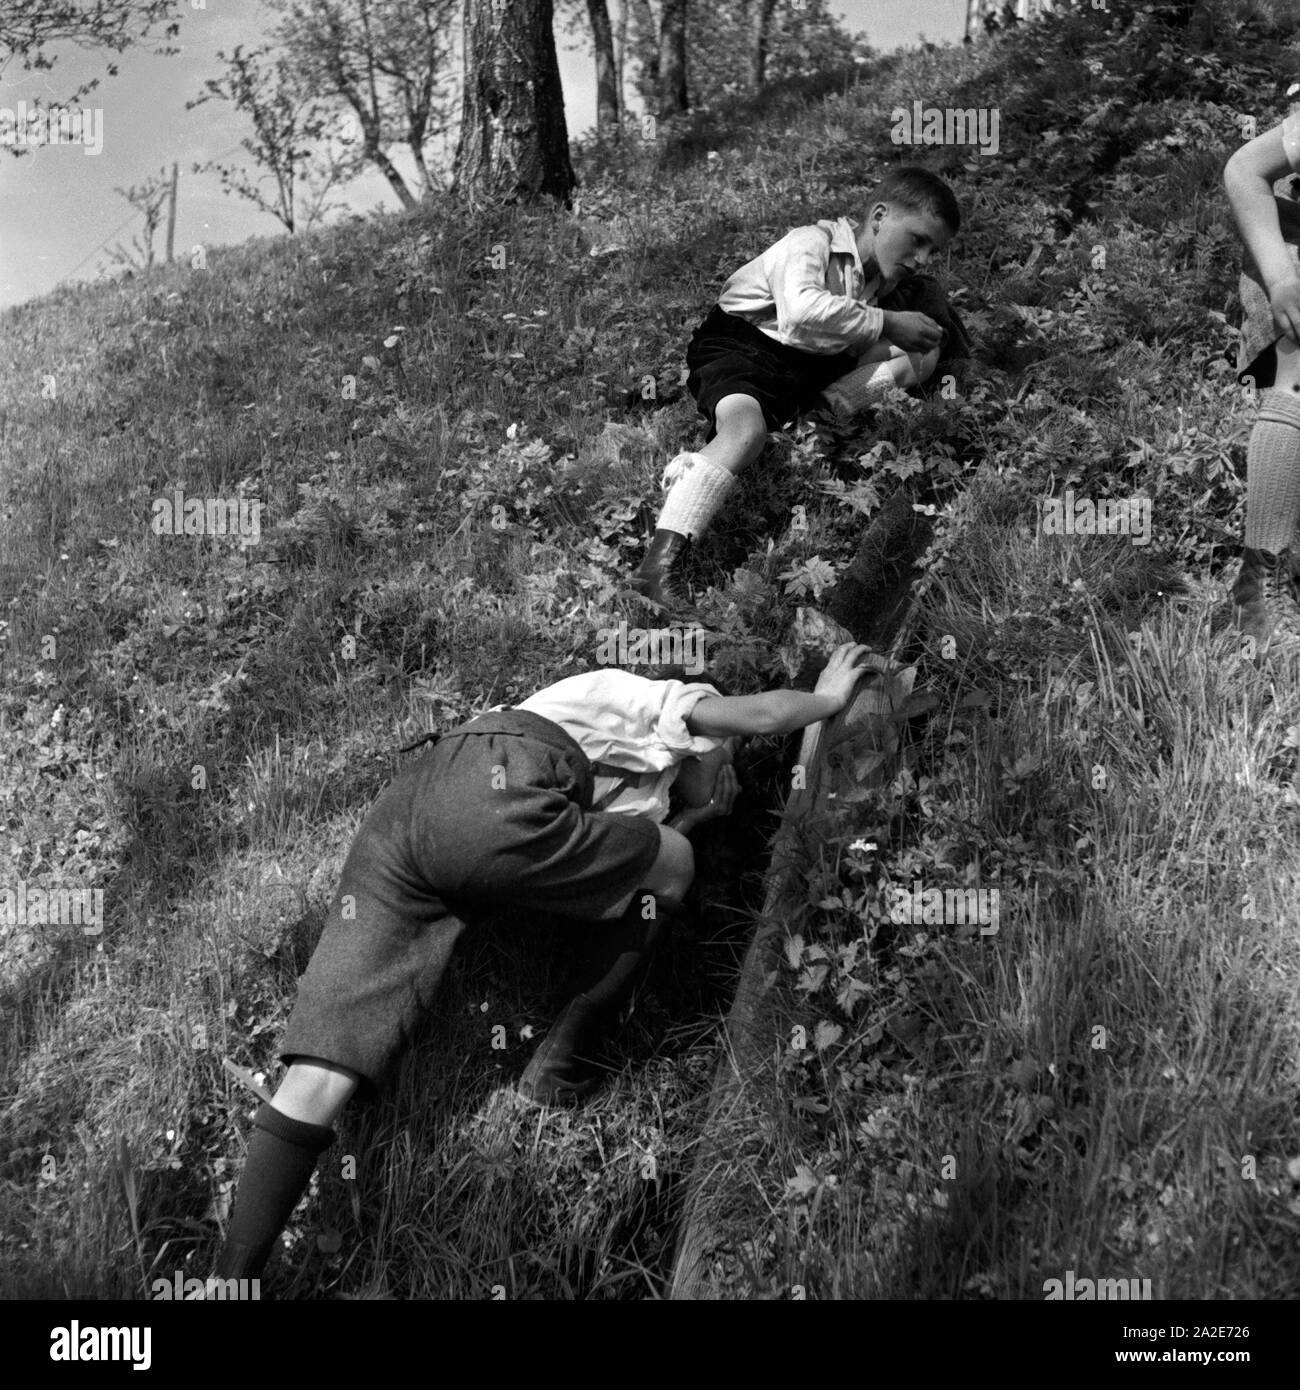 Zwei Jungen trinken auf eine Wanderung aus einem Bach bei Berchtesgaden, Deutschland 1930er Jahre. Mentre vagavano, due ragazzi prendere acqua da un torrente, Germania 1930s. Foto Stock